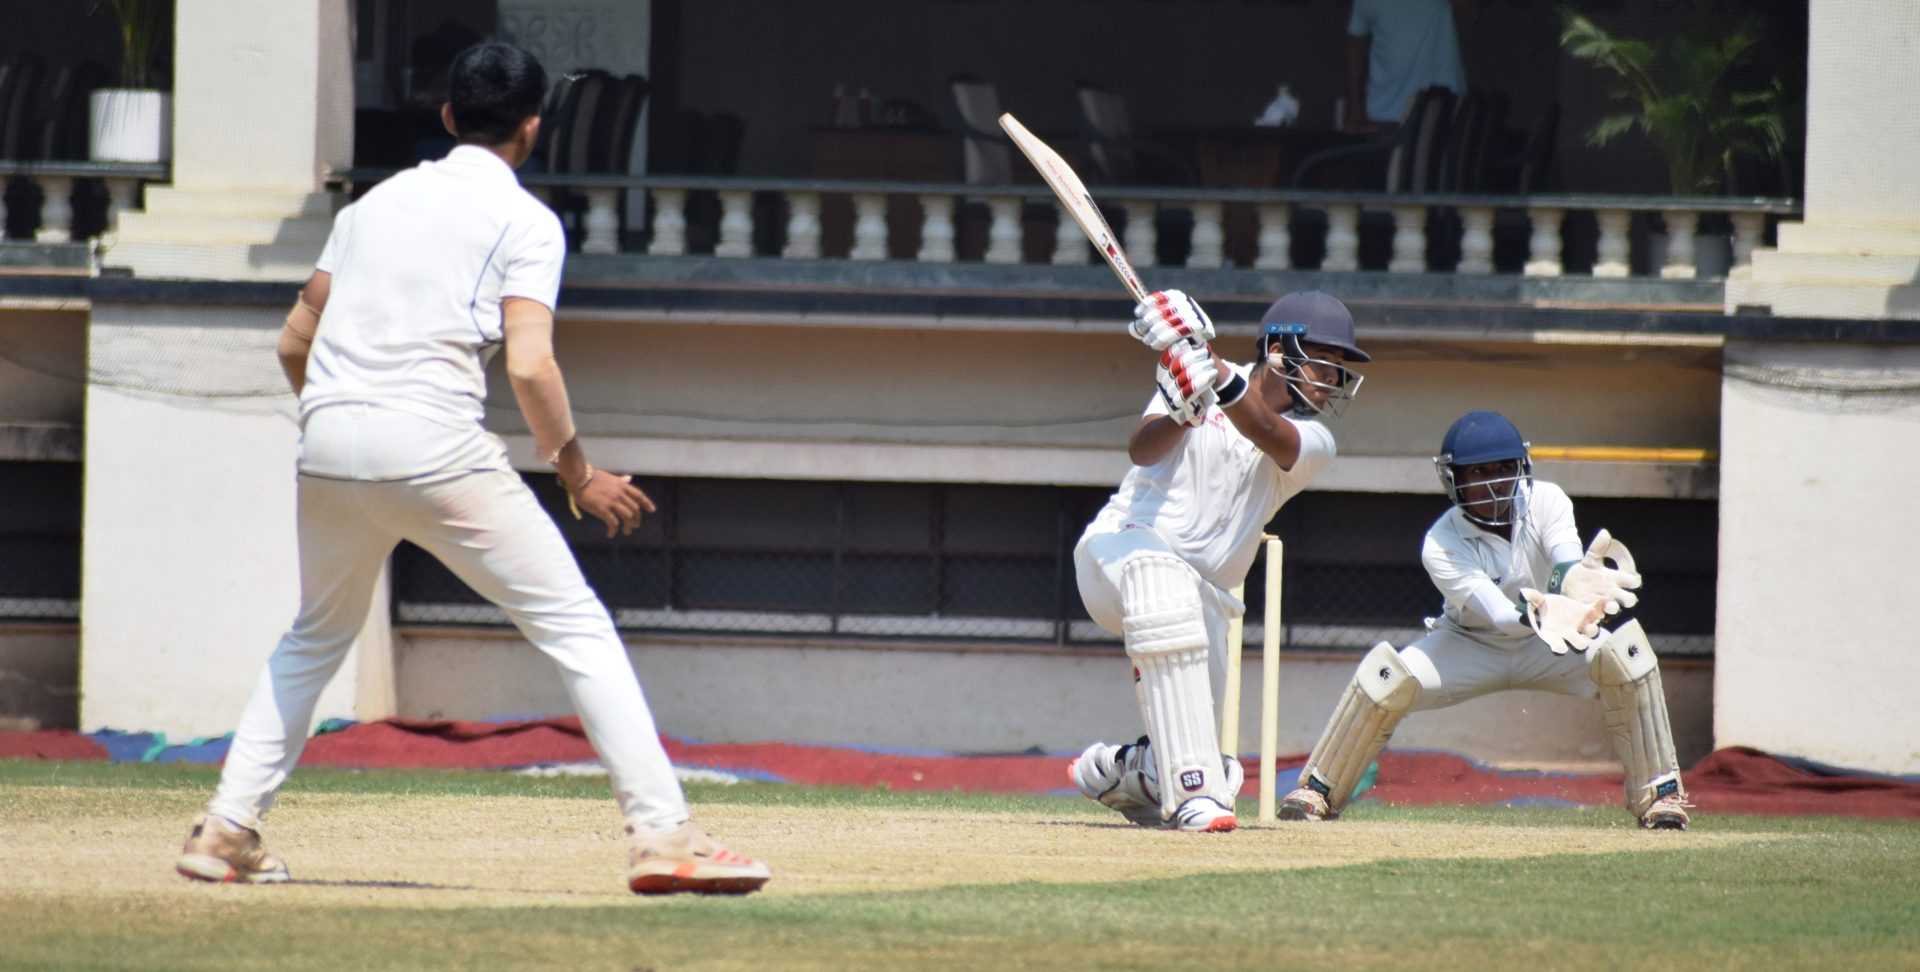 चौथ्या पीवायसी गोल्डफिल्ड राजू भालेकर स्मृती करंडक निमंत्रित 19 वर्षाखालील गटाच्या तीन दिवसीय क्रिकेट स्पर्धेत ब्रिलियंटस स्पोर्ट्स अकादमी संघाची पहिल्या डावात 335 धावांची आघाडी